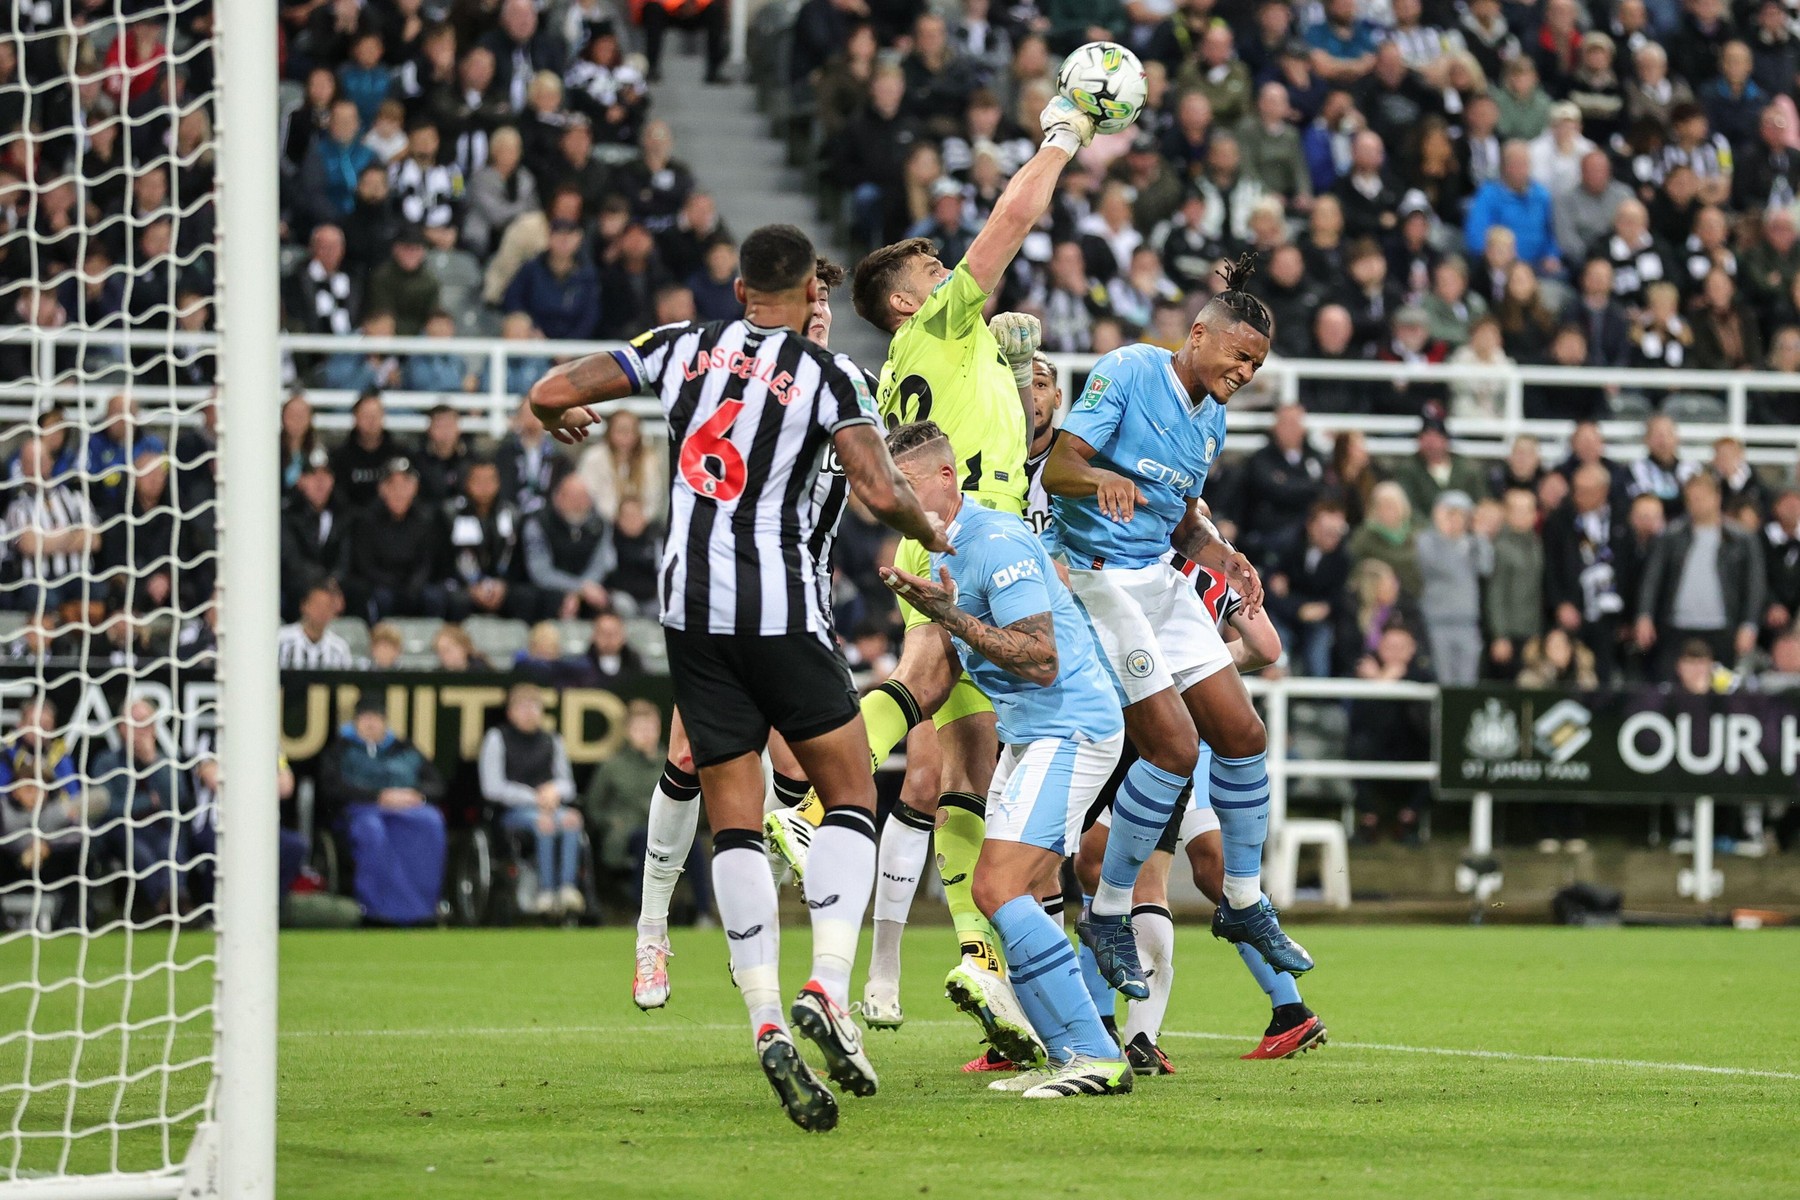 Newcastle - Manchester City 2-1, ACUM DGS 1. ”Coțofenele” înscriu de două ori în două minute